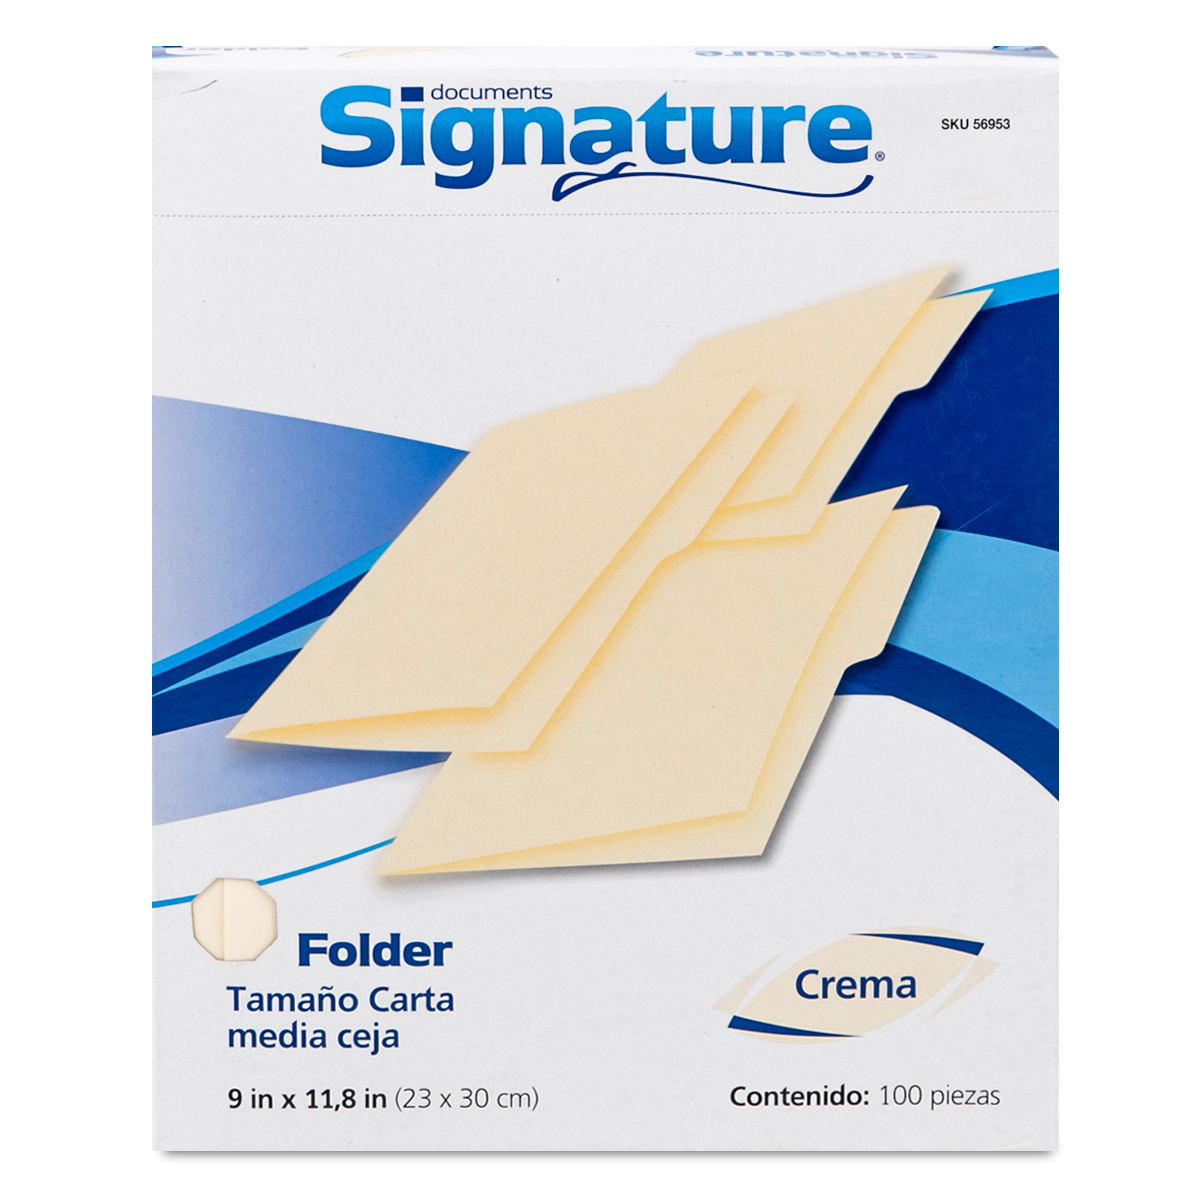 Folders Carta con Media Ceja Signature / Crema / 100 piezas